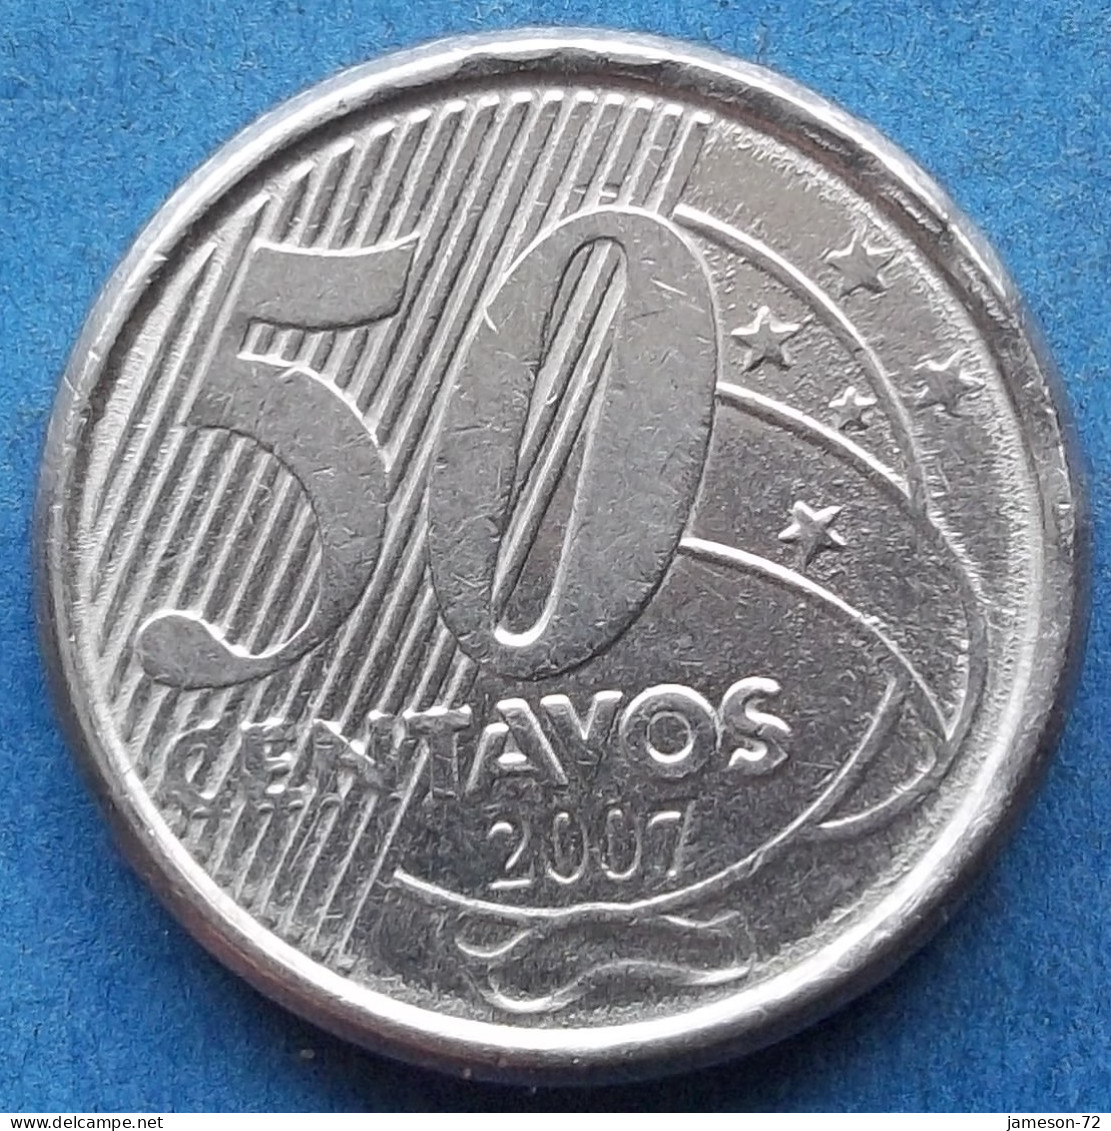 BRAZIL - 50 Centavos 2007 "Baron Of Rio Branco" KM# 651a Monetary Reform (1994) - Edelweiss Coins - Brazil